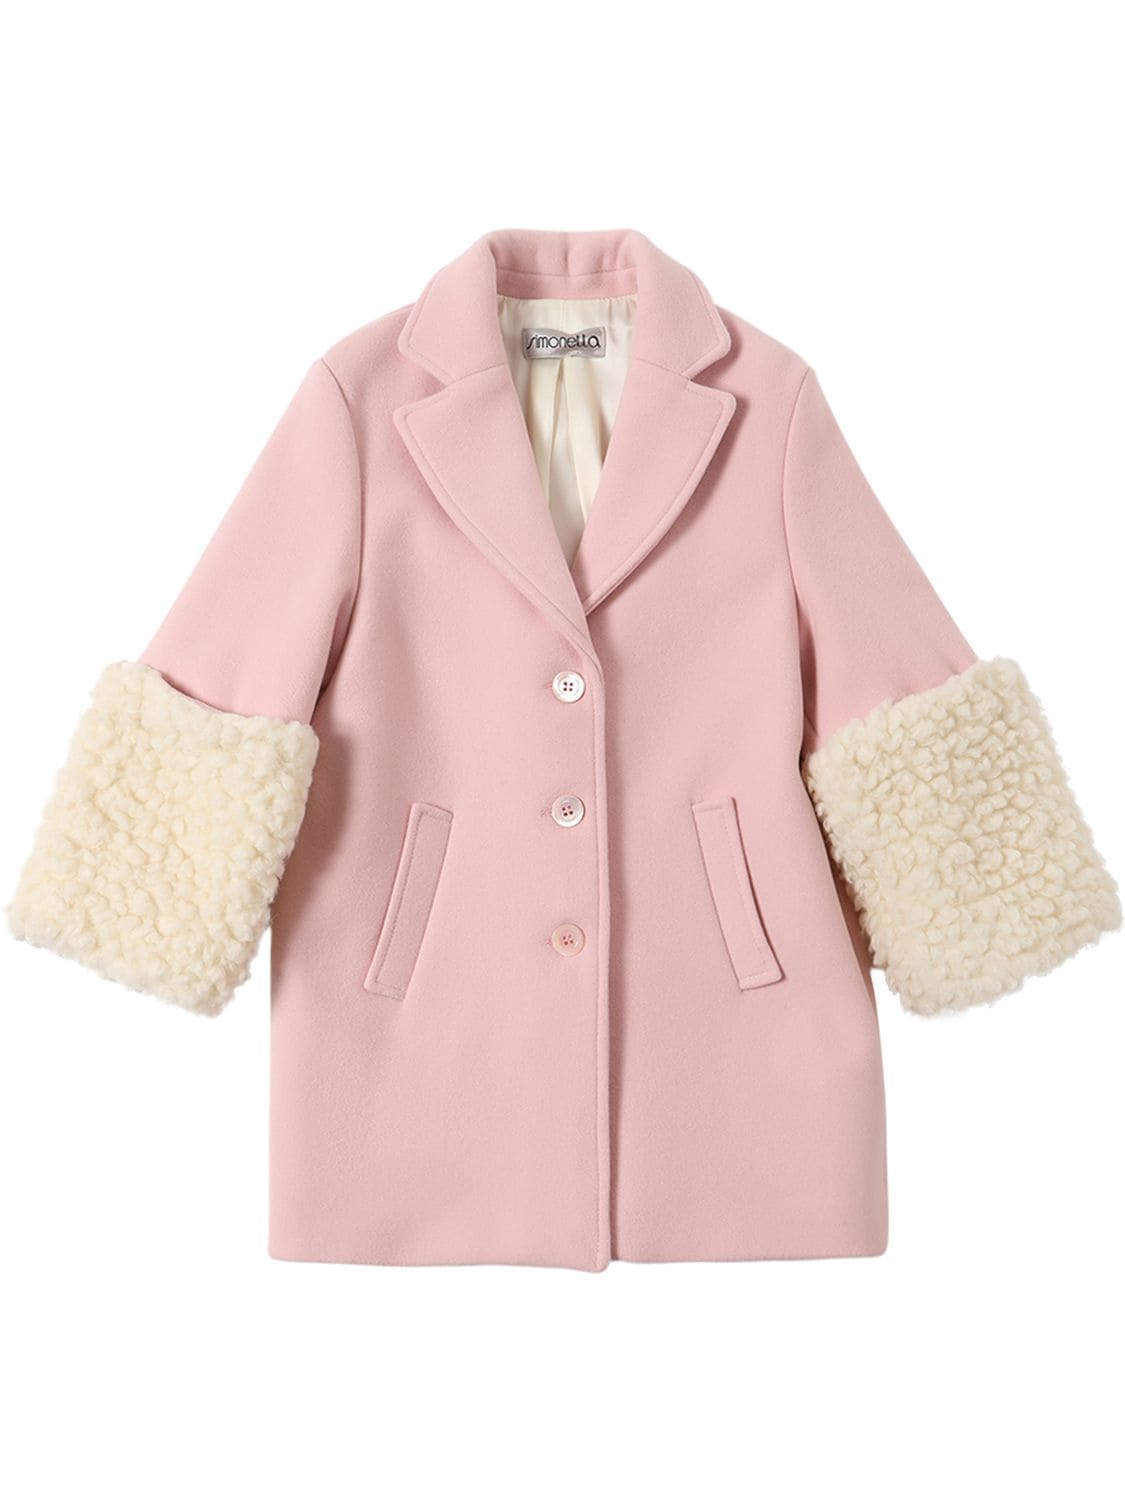 Simonetta Kids' Wool Blend Coat W/ Faux Fur In Pink,cream